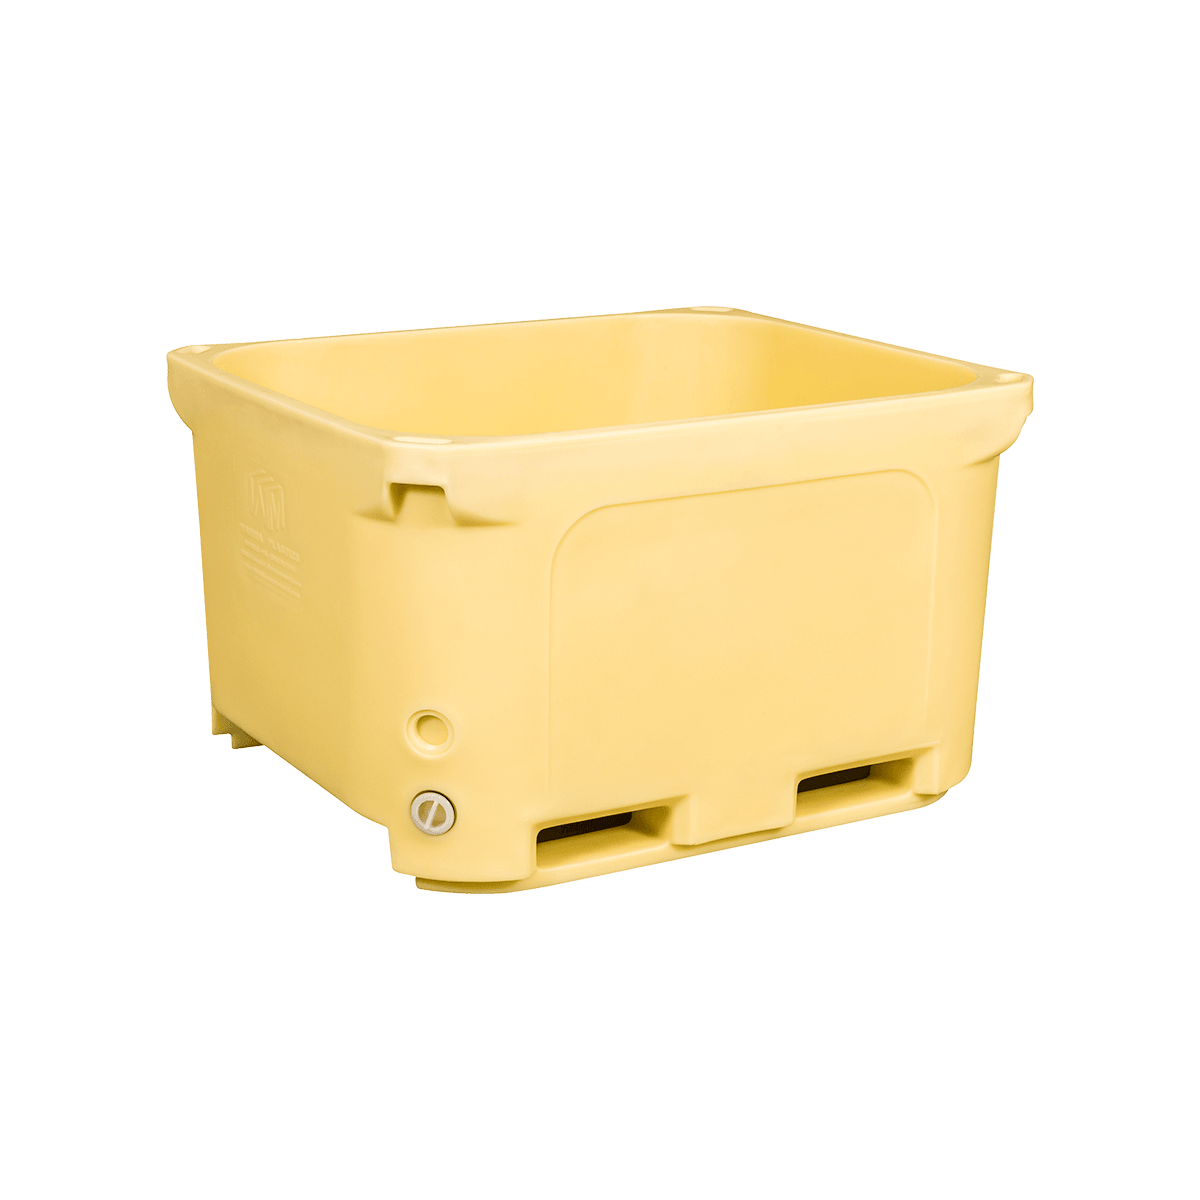 F-660L bin de alimentos apilables de plástico Taller y almacén Uso bin de cadena de frío